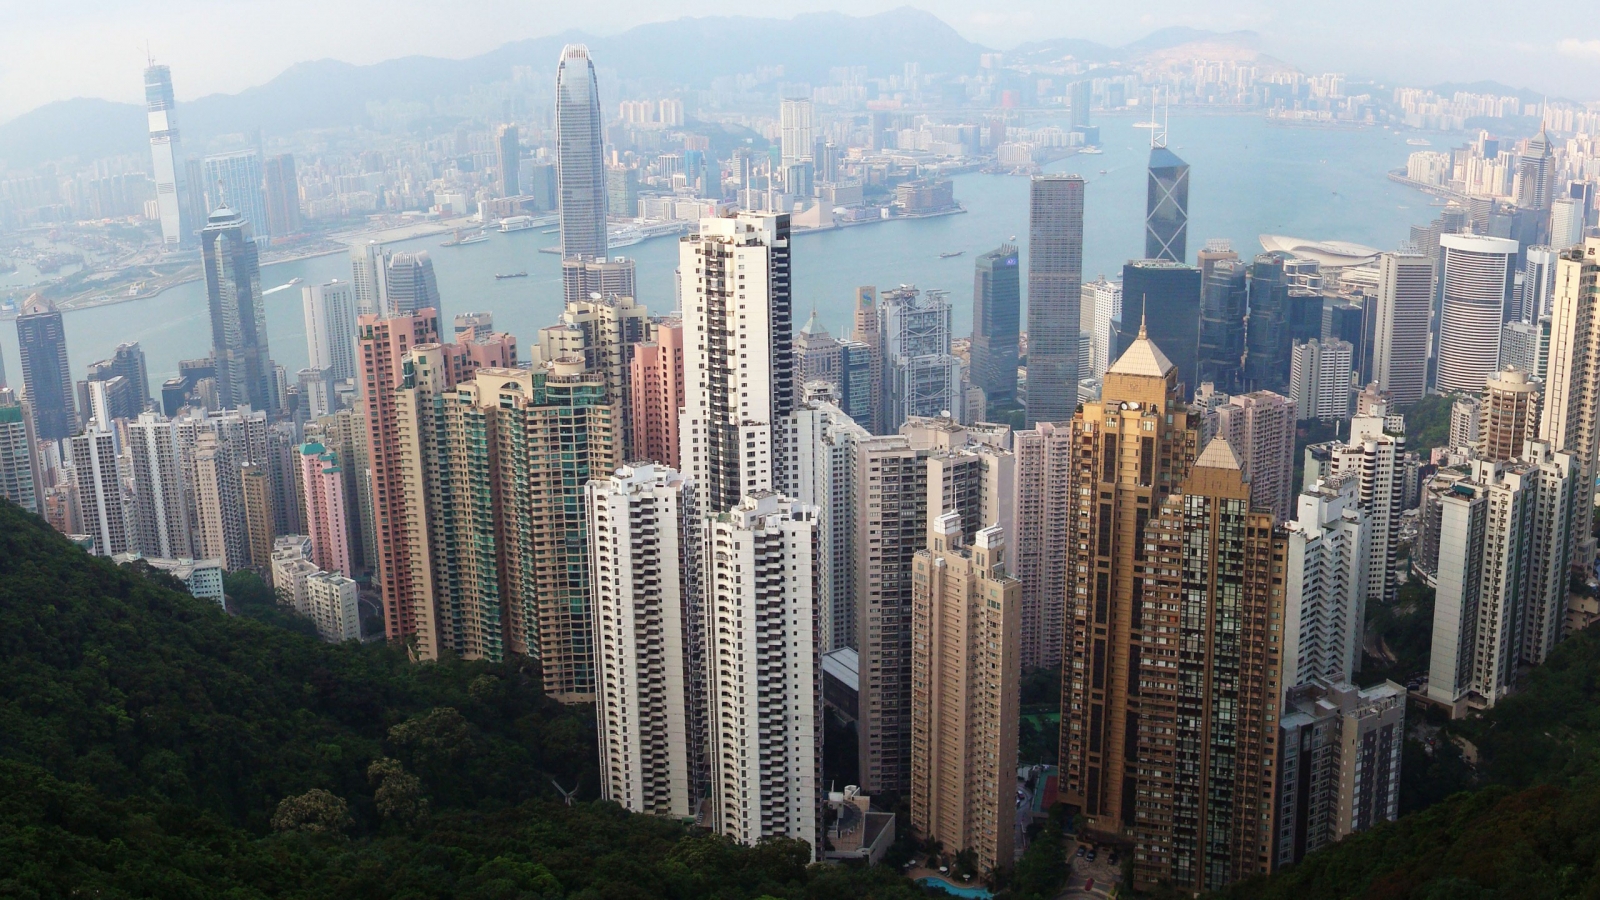 Hong Kong Skyline for 1600 x 900 HDTV resolution